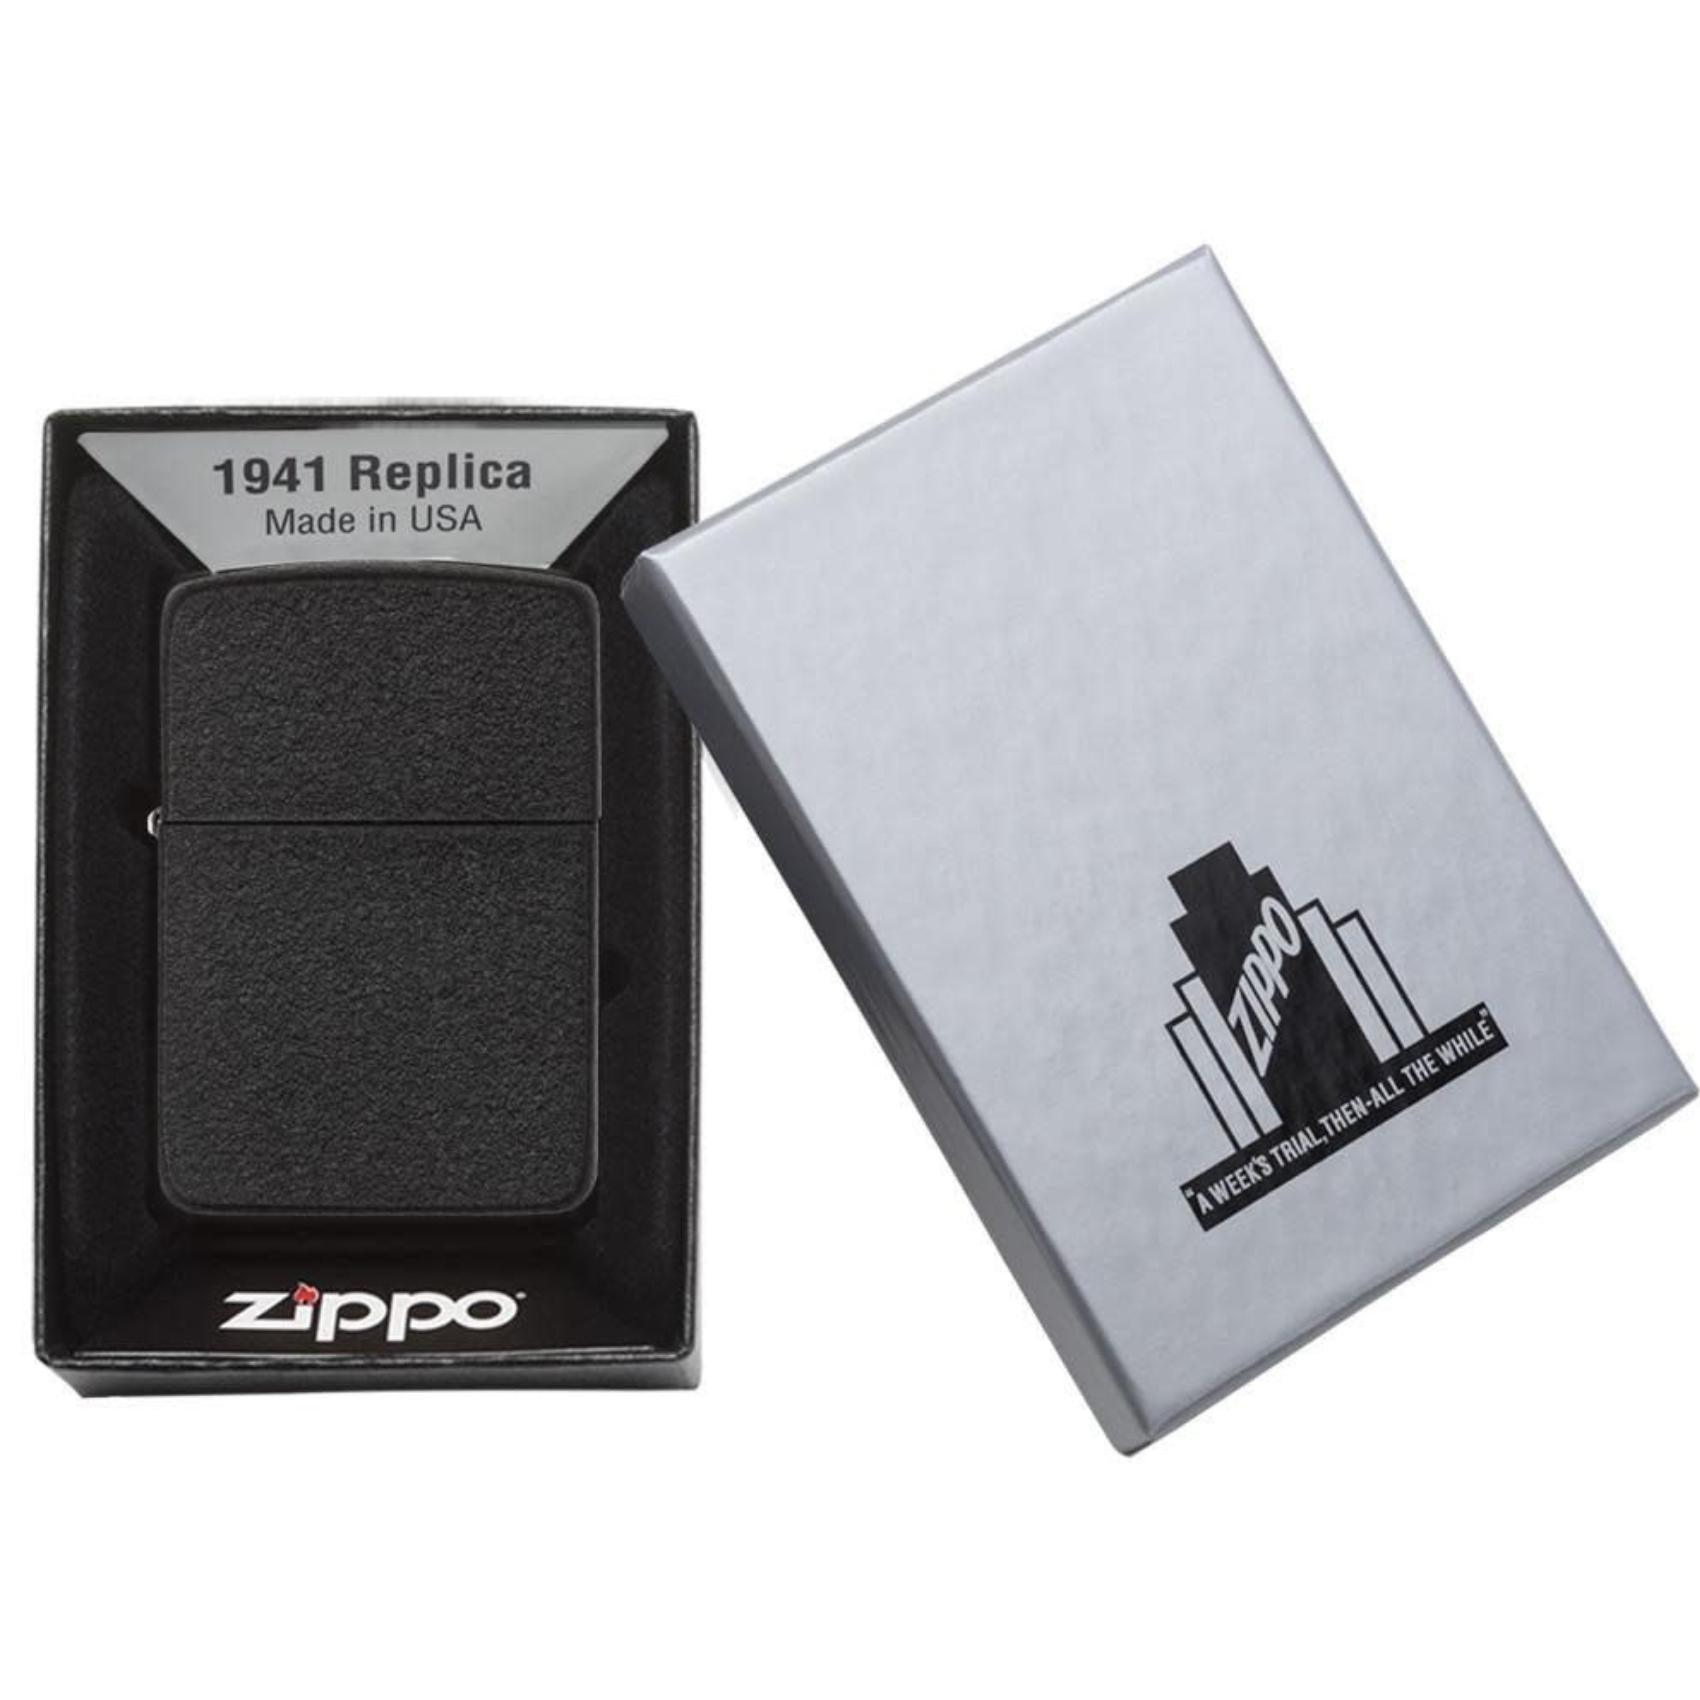 Αντιανεμικός αναπτήρας Zippo Replica 1941 Black Cracle 28582 σε μαύρο χρώμα με ματ υψή και δυνατότητα χαράγματος για ένα προσωποποιημένο δώρο.